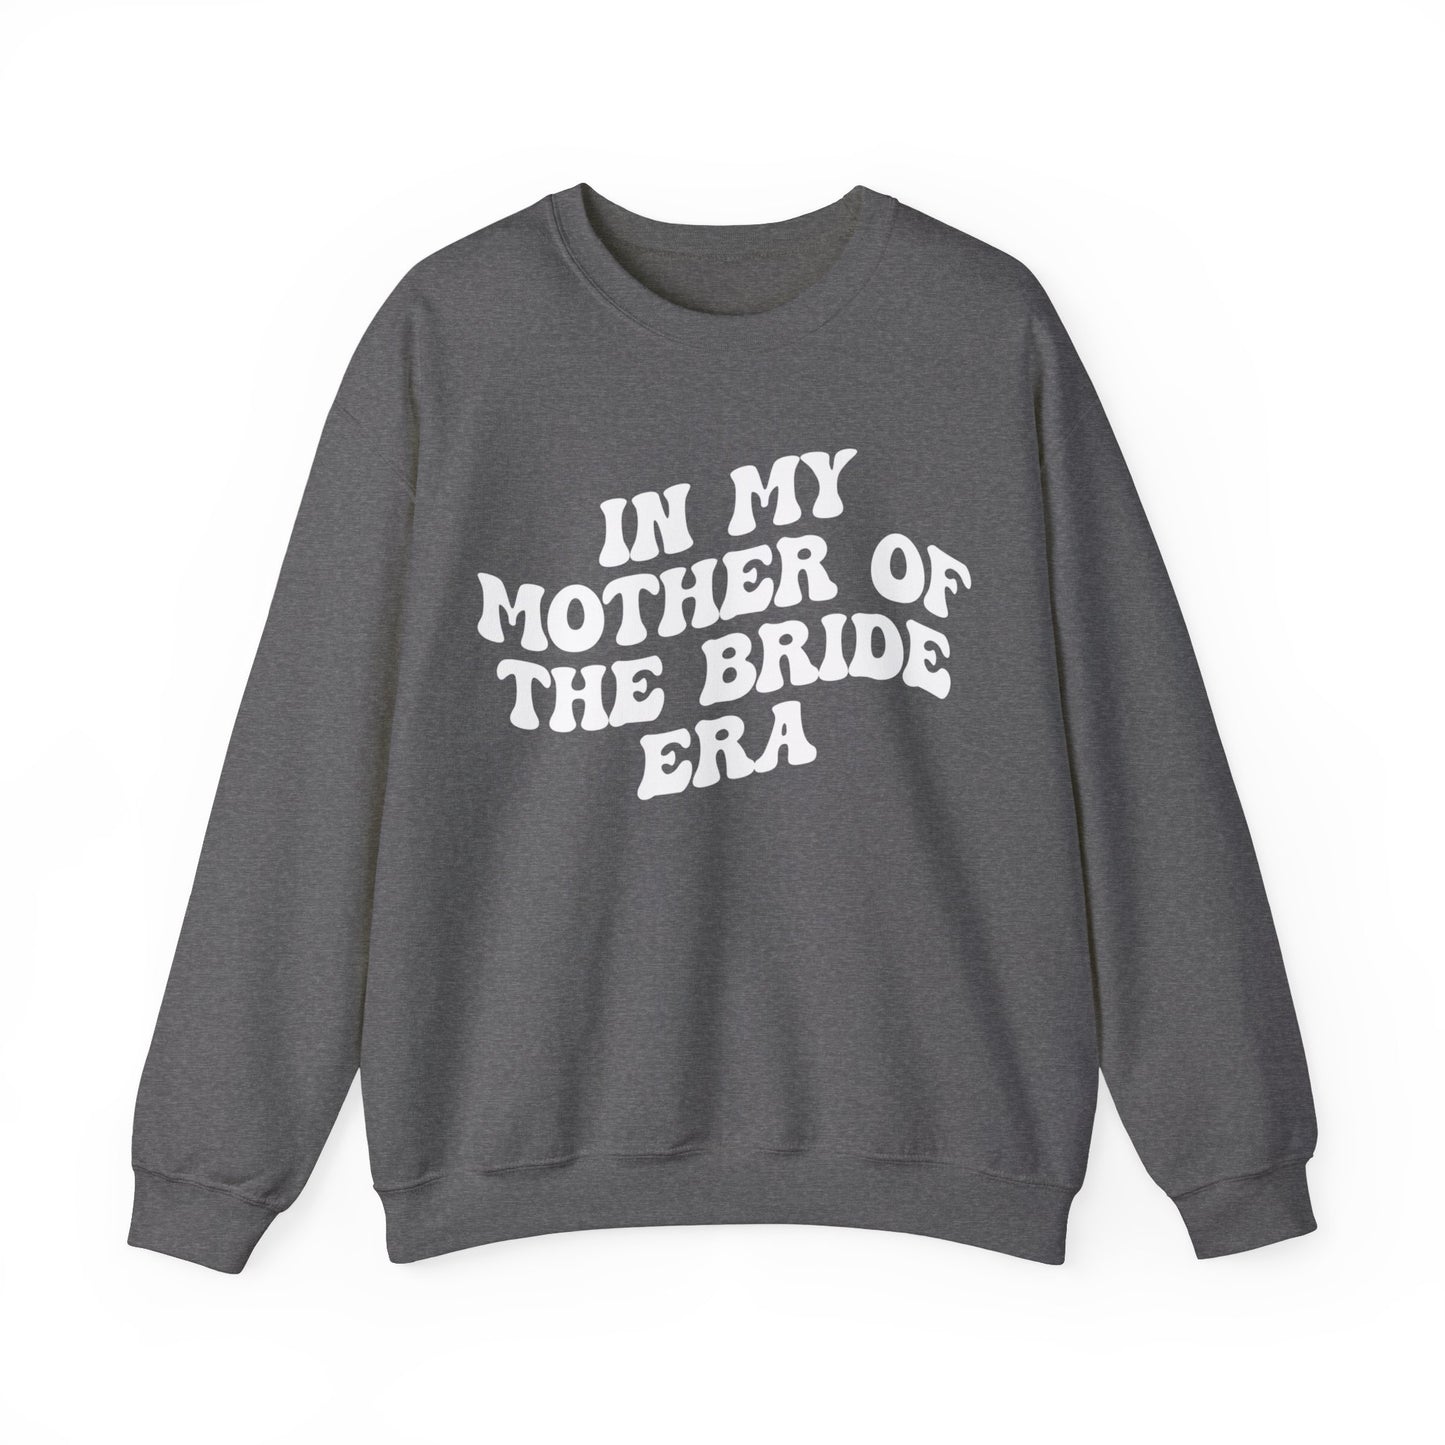 In My Mother of the Bride Era Sweatshirt, Bridal Party Sweatshirt for Mom, Retro Wedding Sweatshirt for Mom, Engagement Sweatshirt, S1351